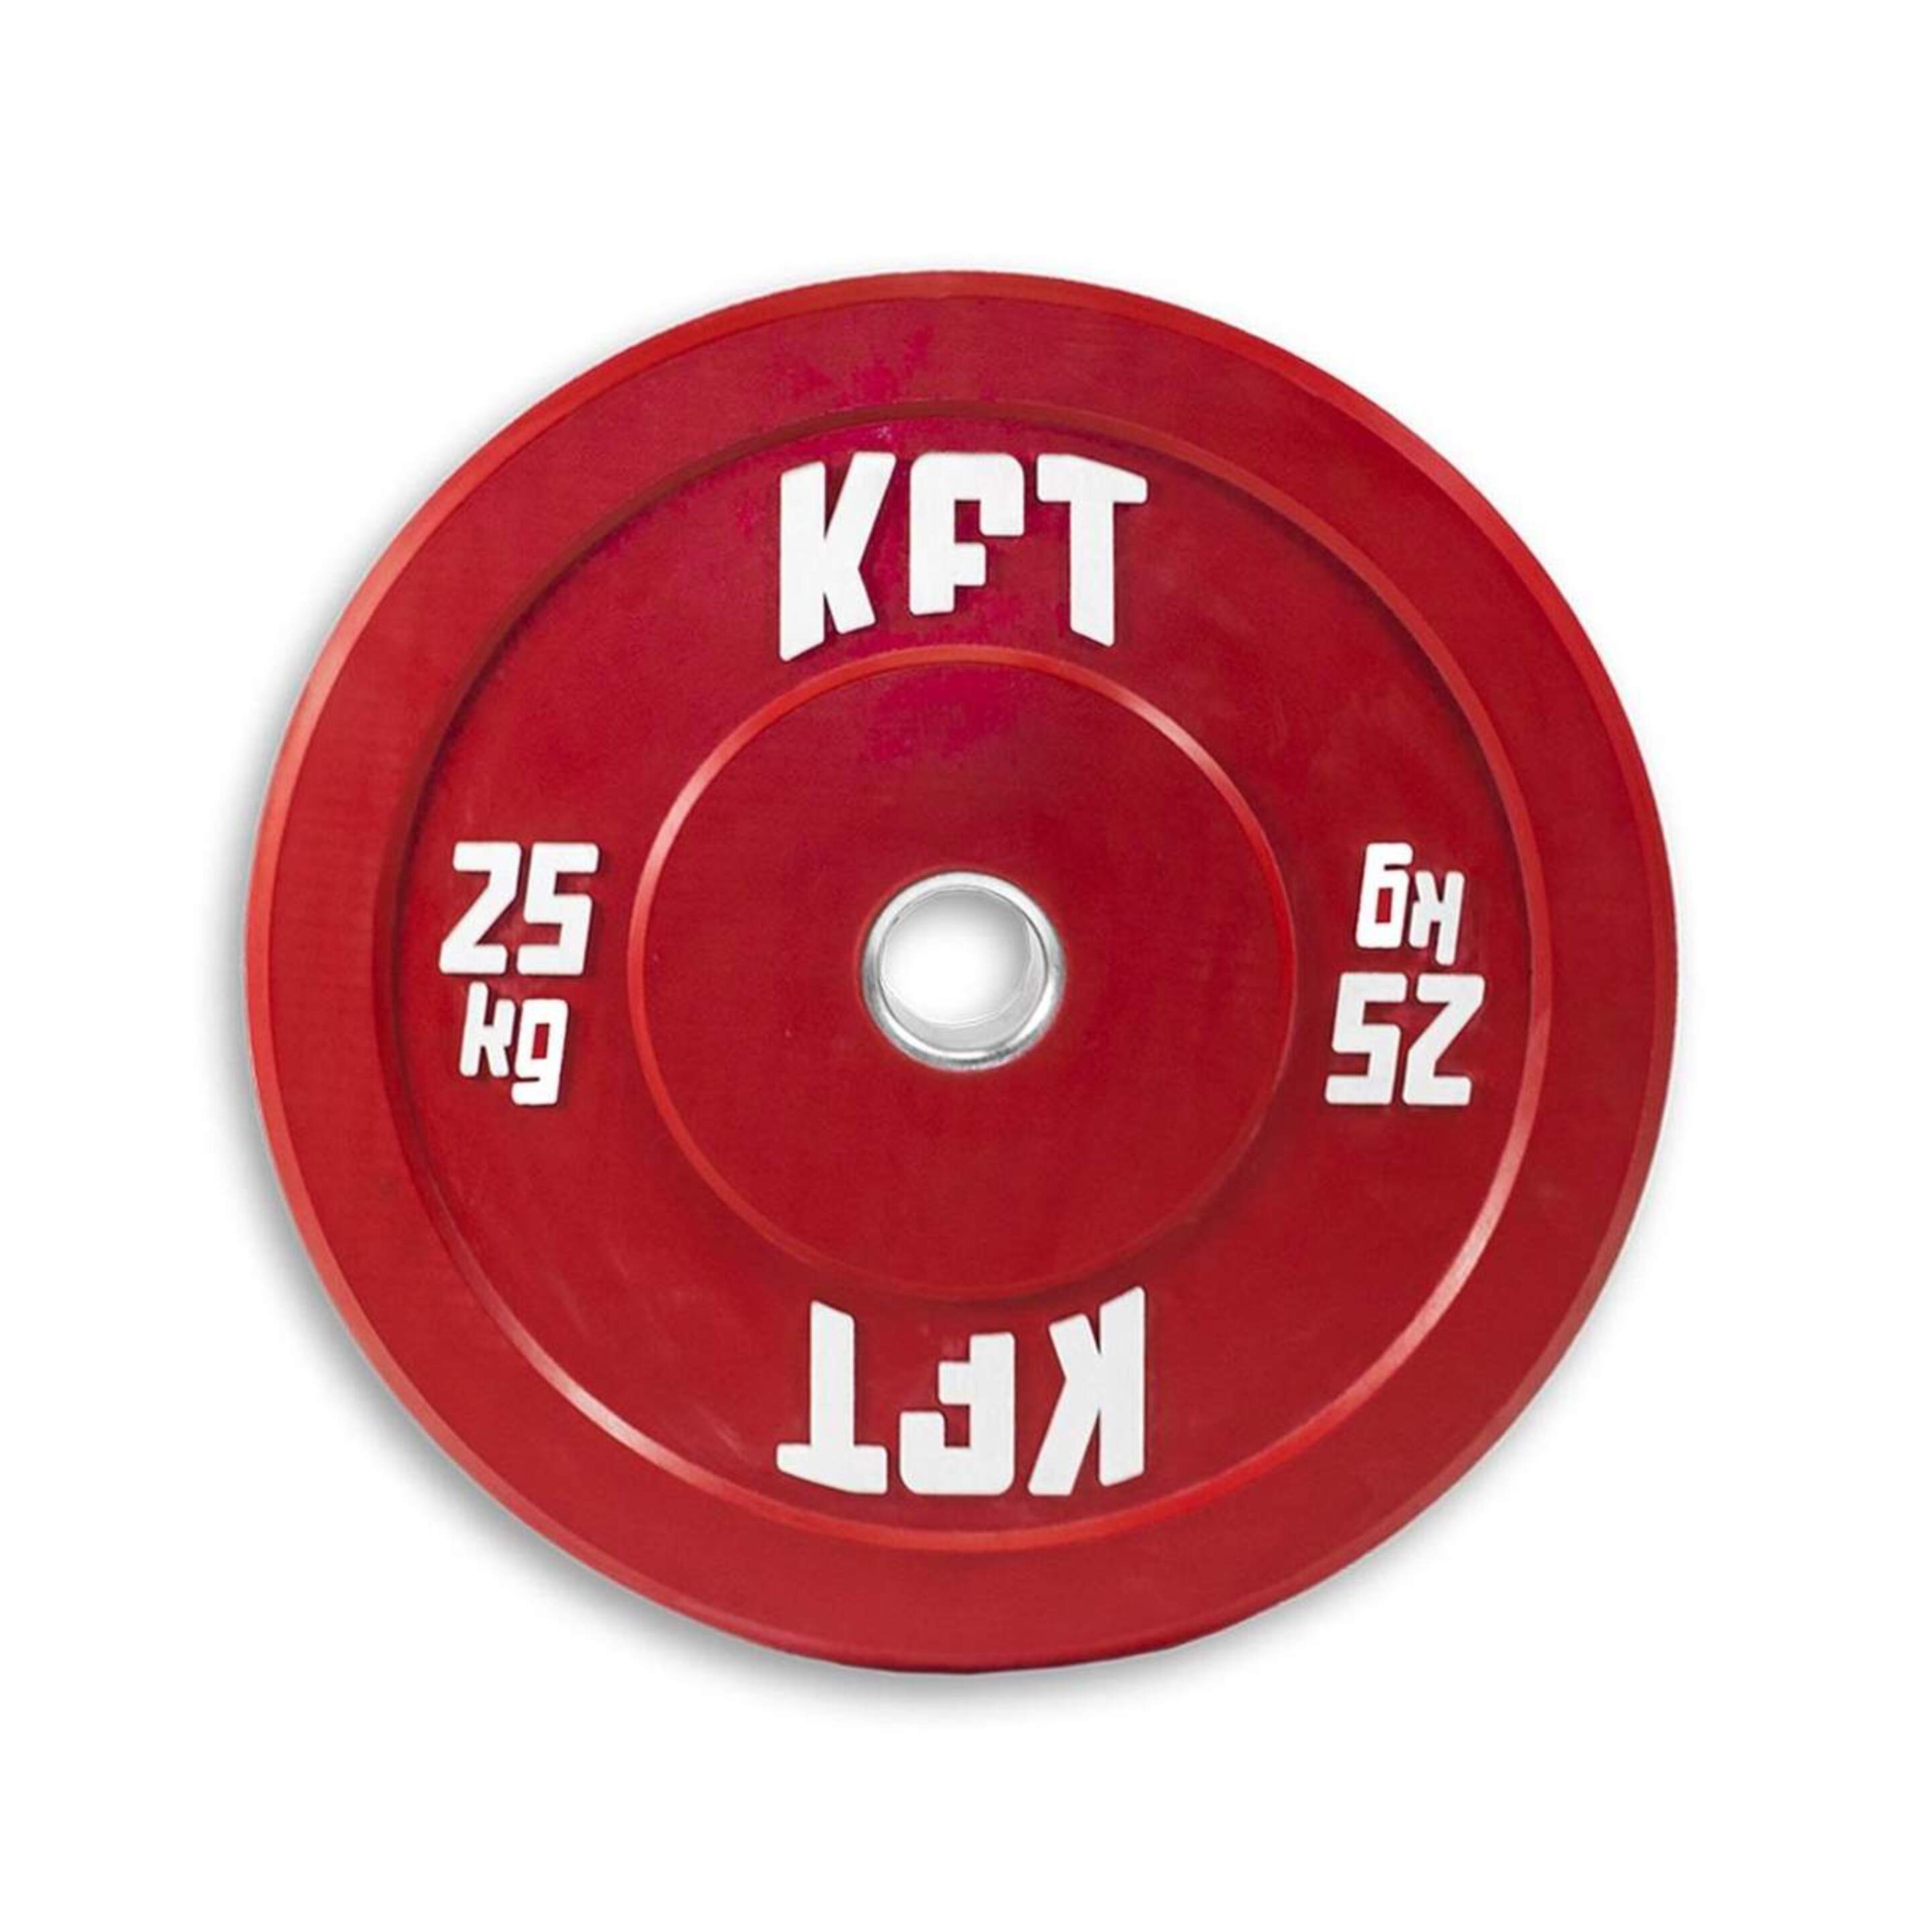 Disco Bumper Kft 25kg - rojo - 